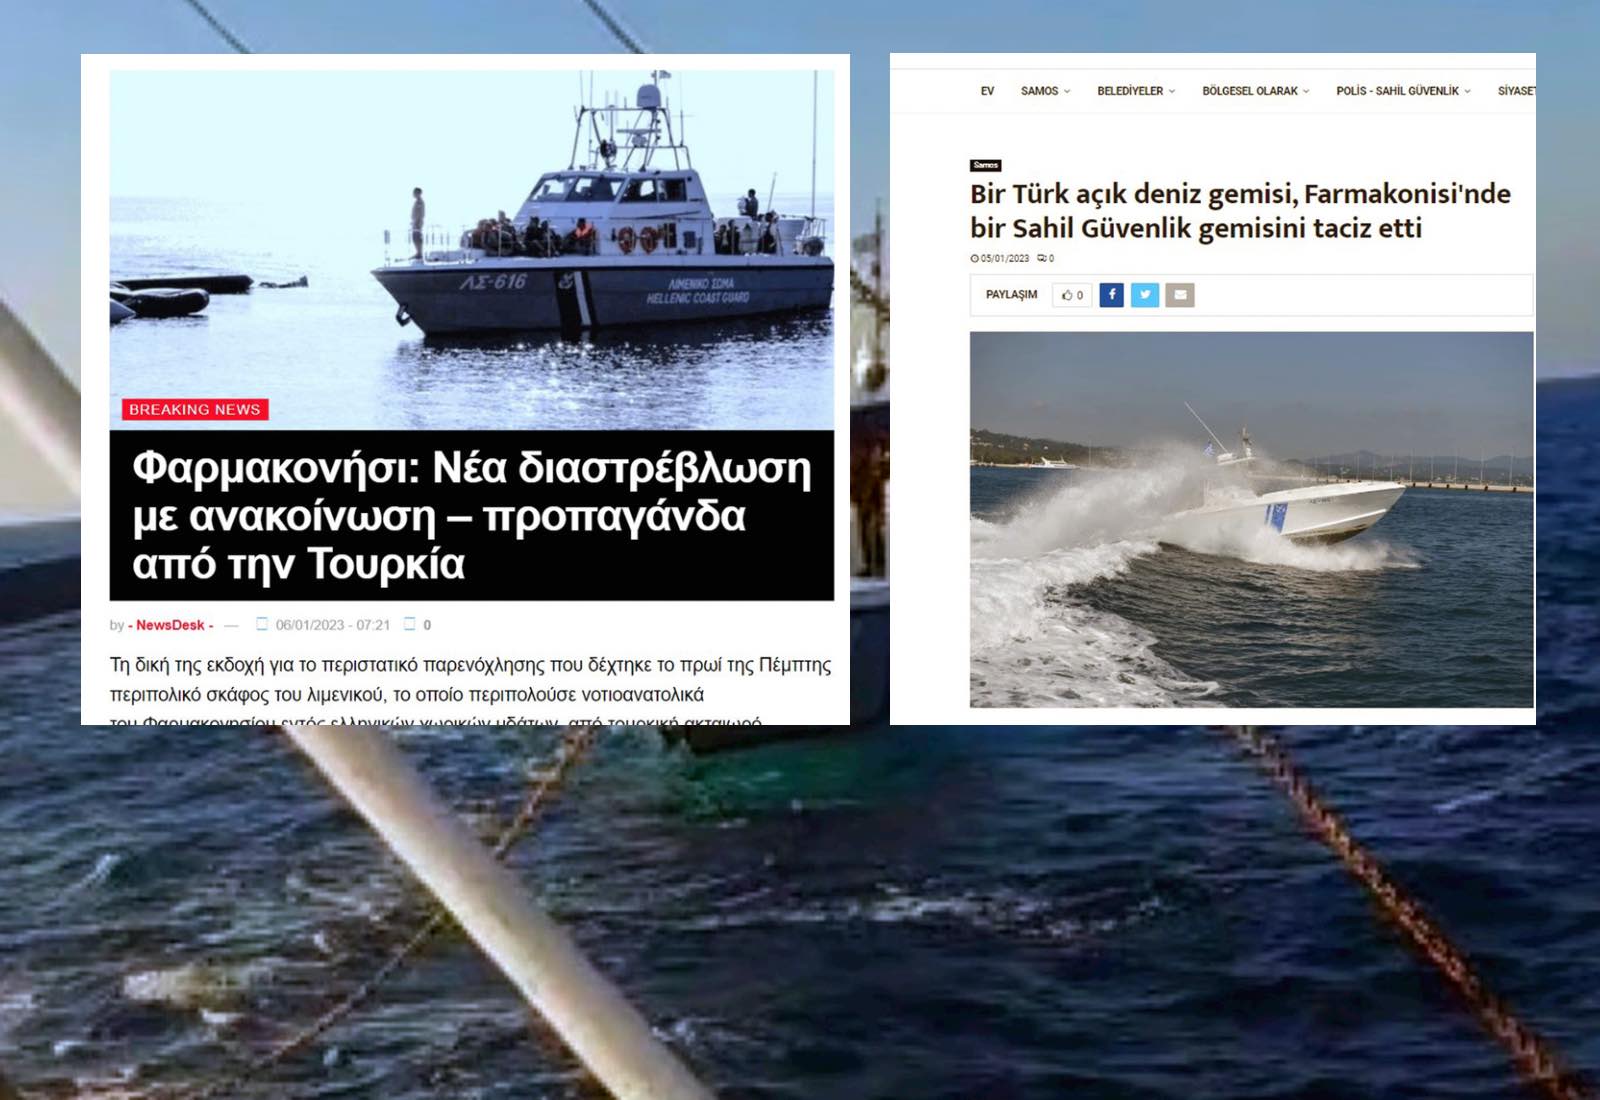 Yunan medyası tacizi yine çarpıttı!